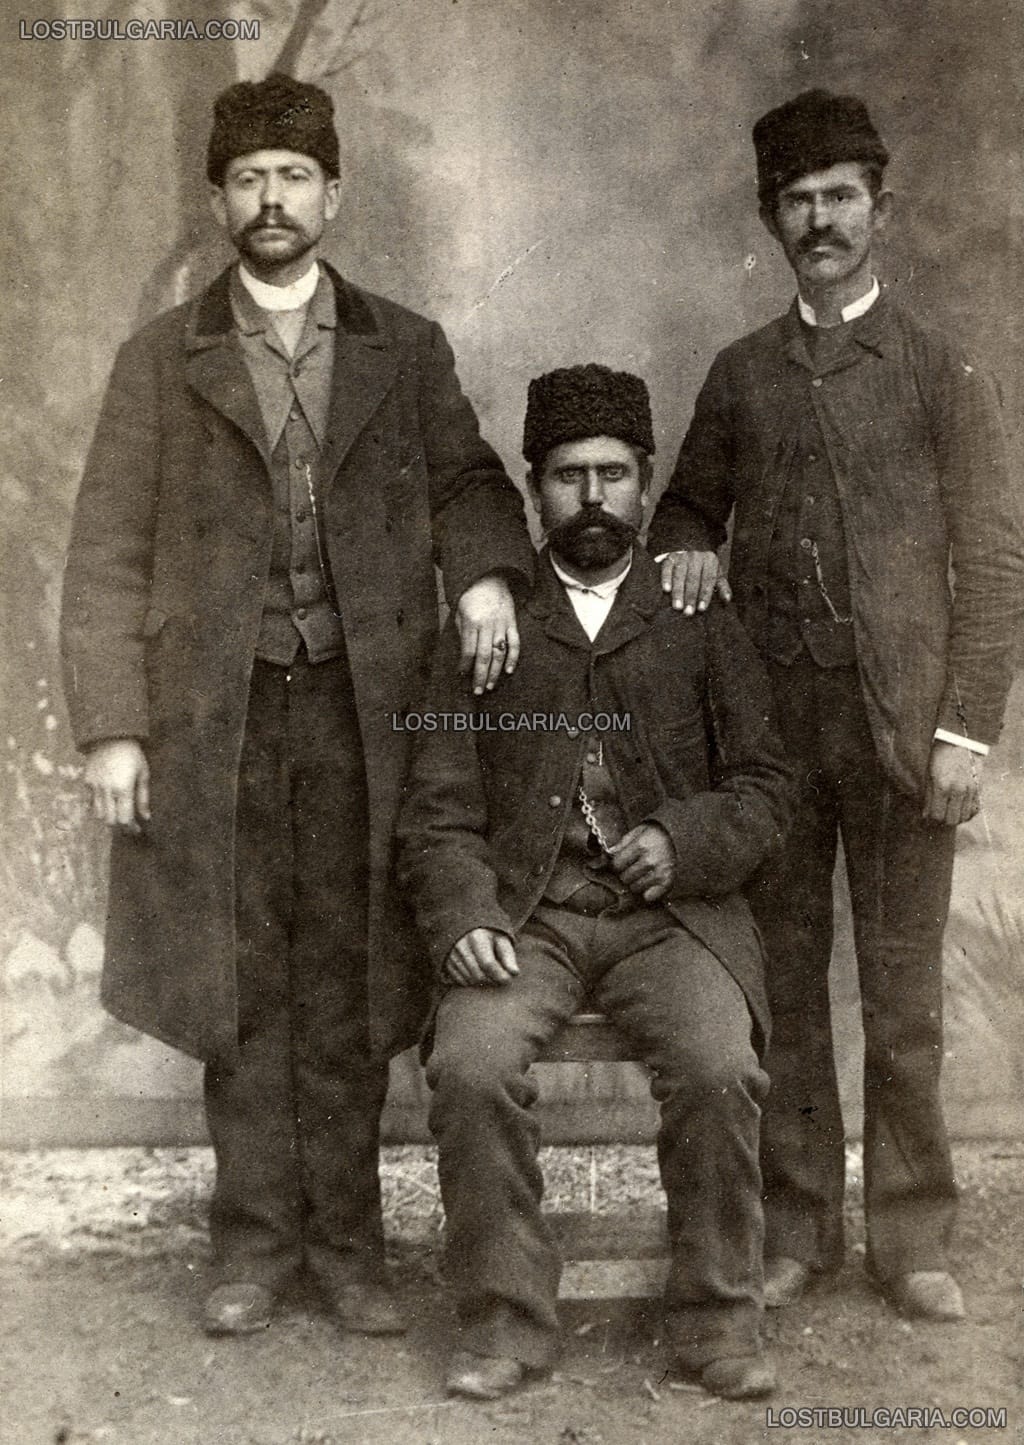 Студиен портрет на трима мъже в градско облекло от края на XIX век. Снимката е надписана: "Старий стражар на 2 участък в София време 1887 по Воскресение ми го подари", София 1887 г.